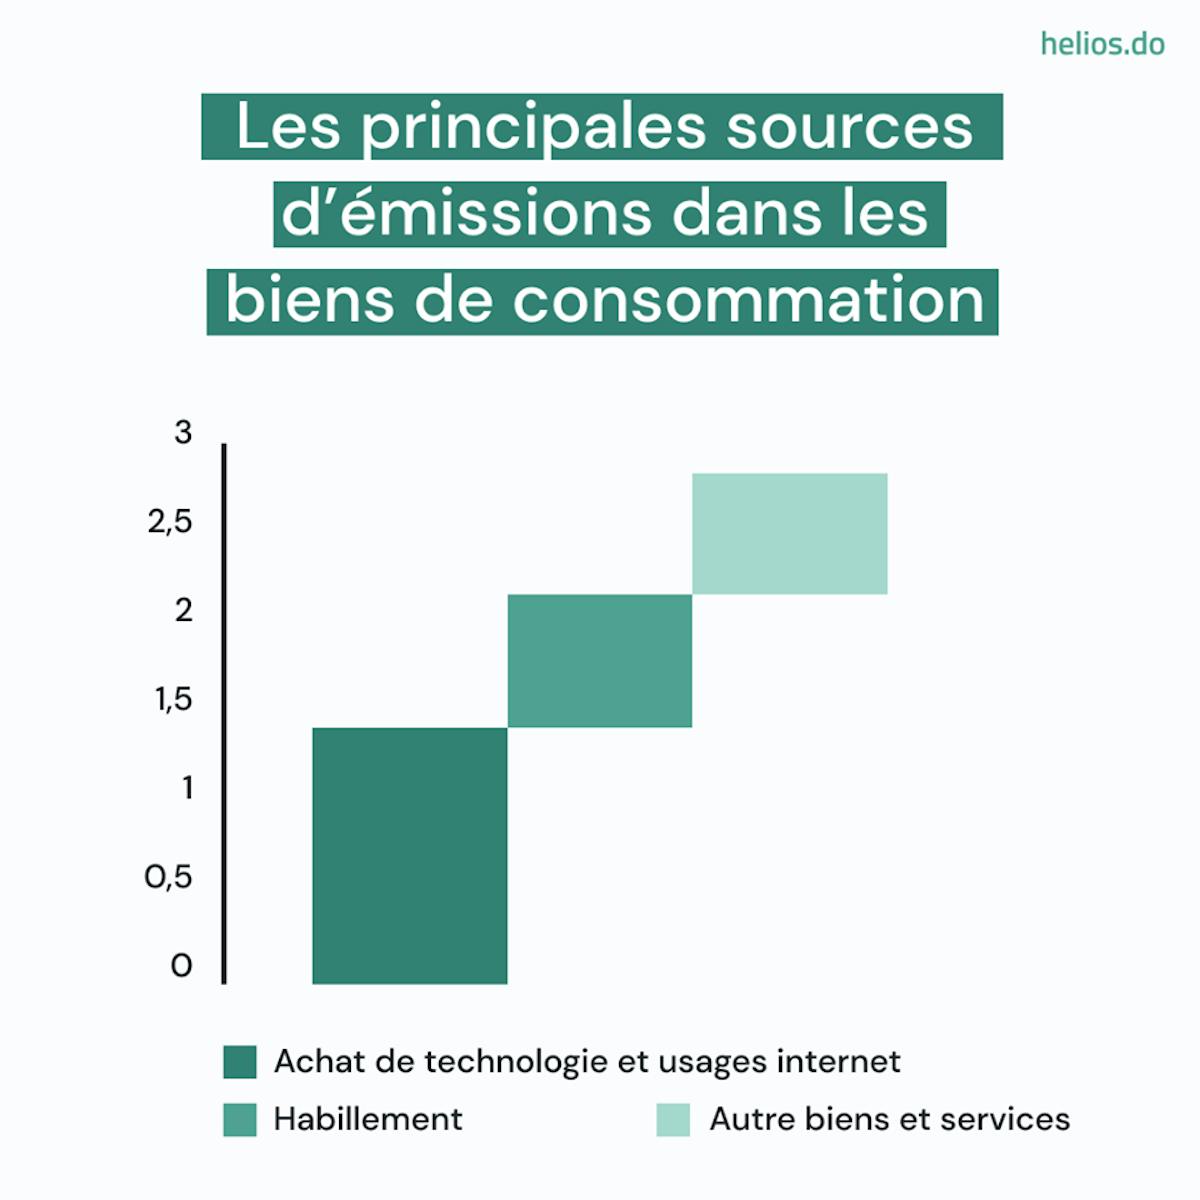 Les principales sources d'émissions dans les biens de consommation